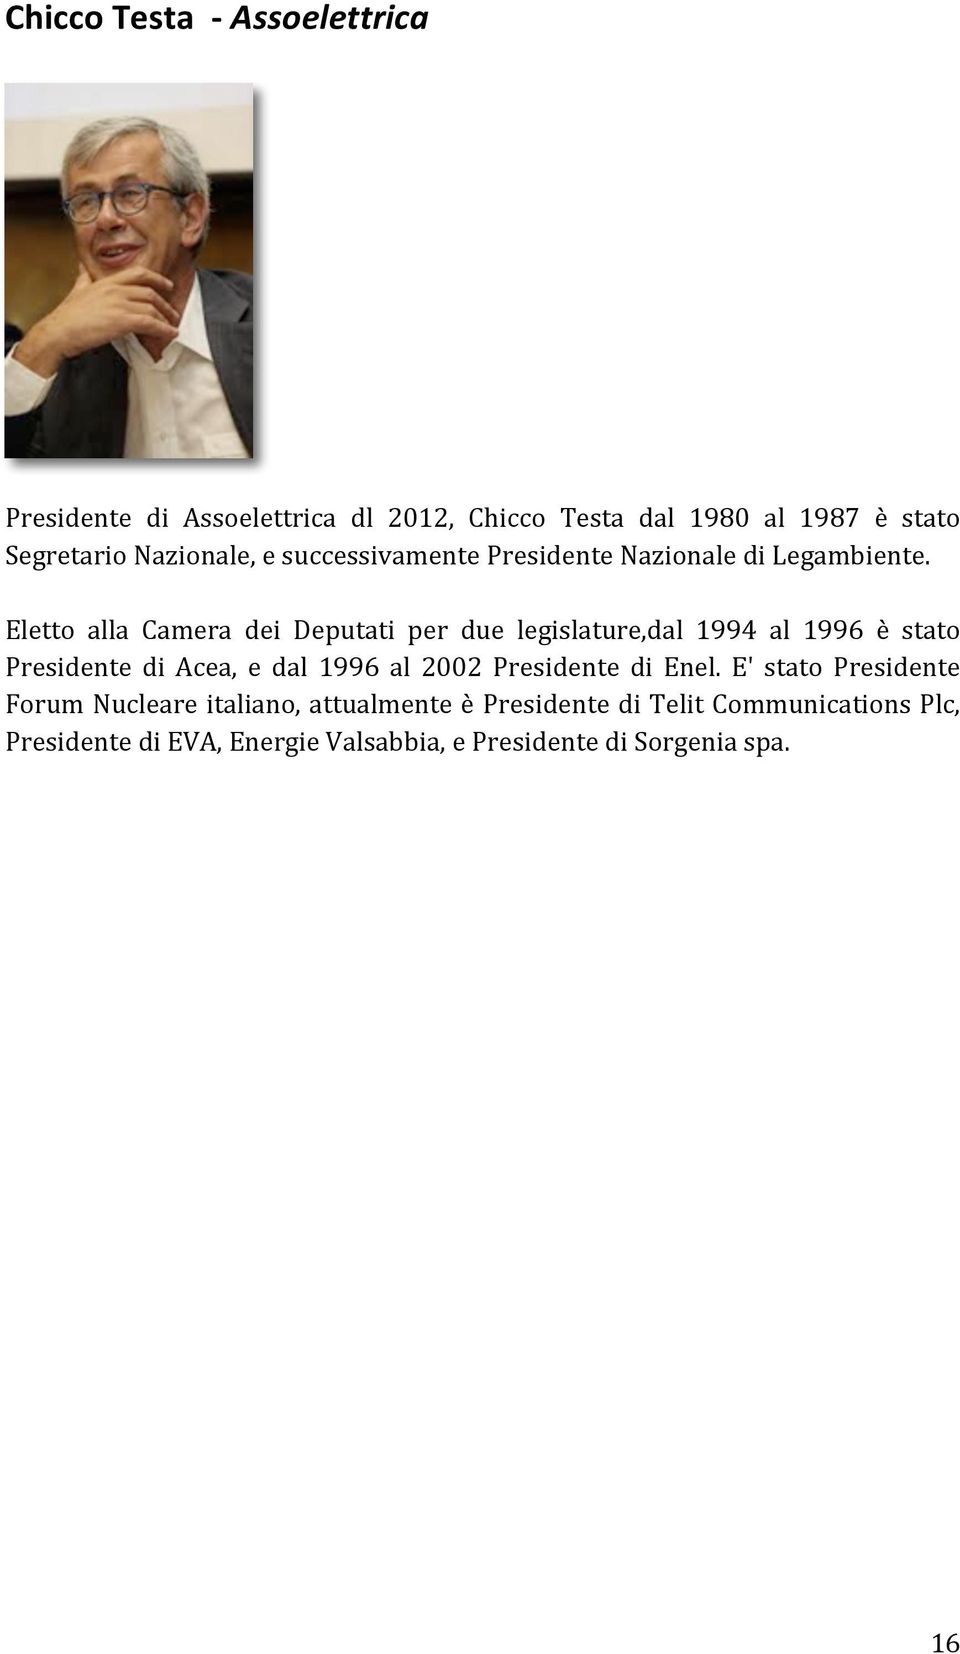 Eletto alla Camera dei Deputati per due legislature,dal 1994 al 1996 è stato Presidente di Acea, e dal 1996 al 2002